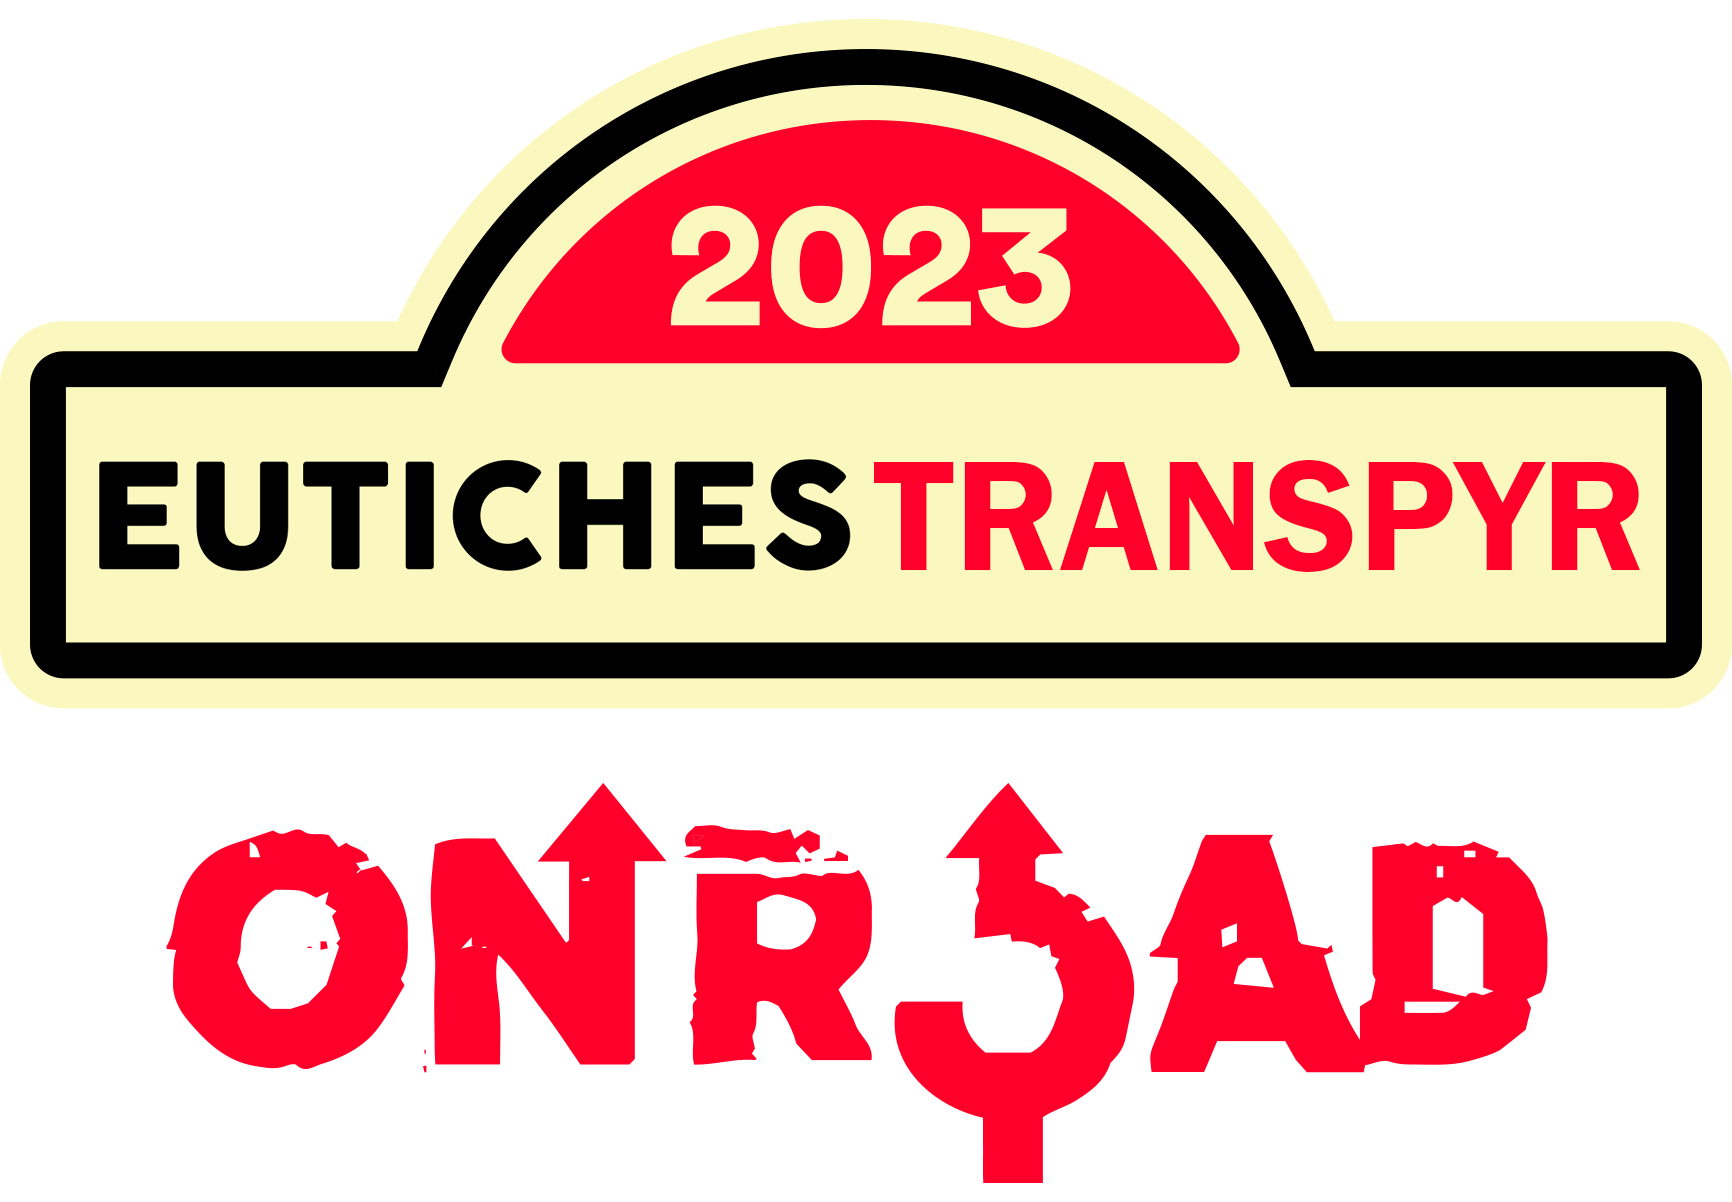 Eutiches Transpyr OnRoad